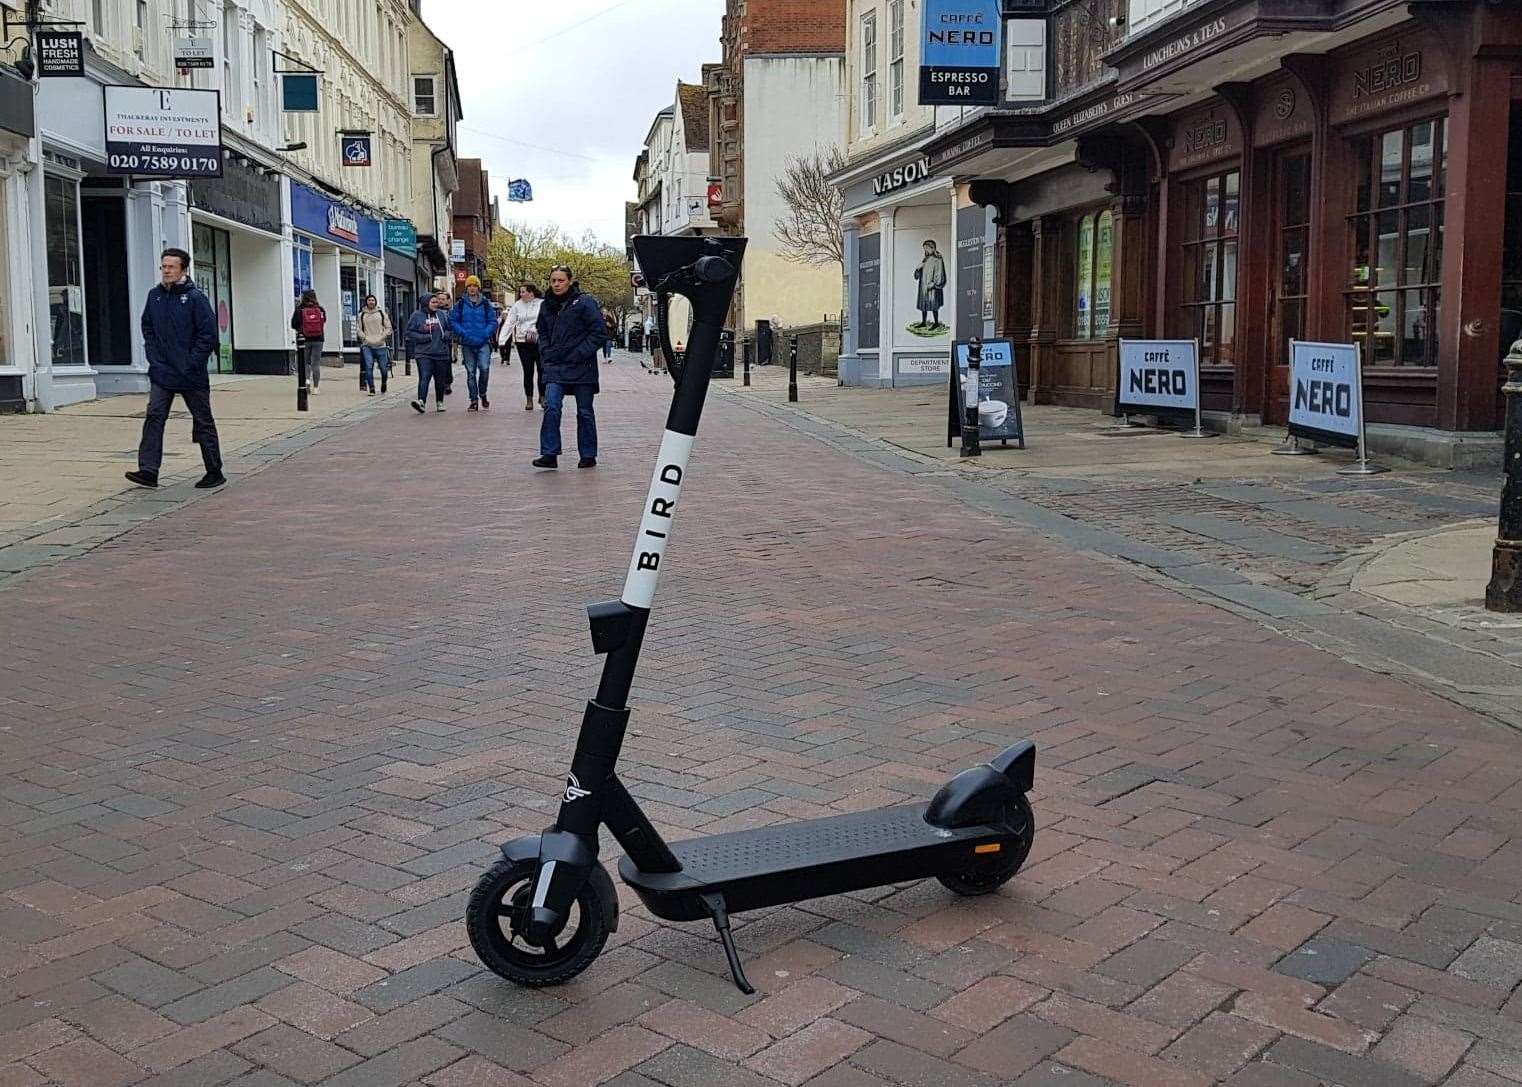 A Bird e scooter in Canterbury city centre